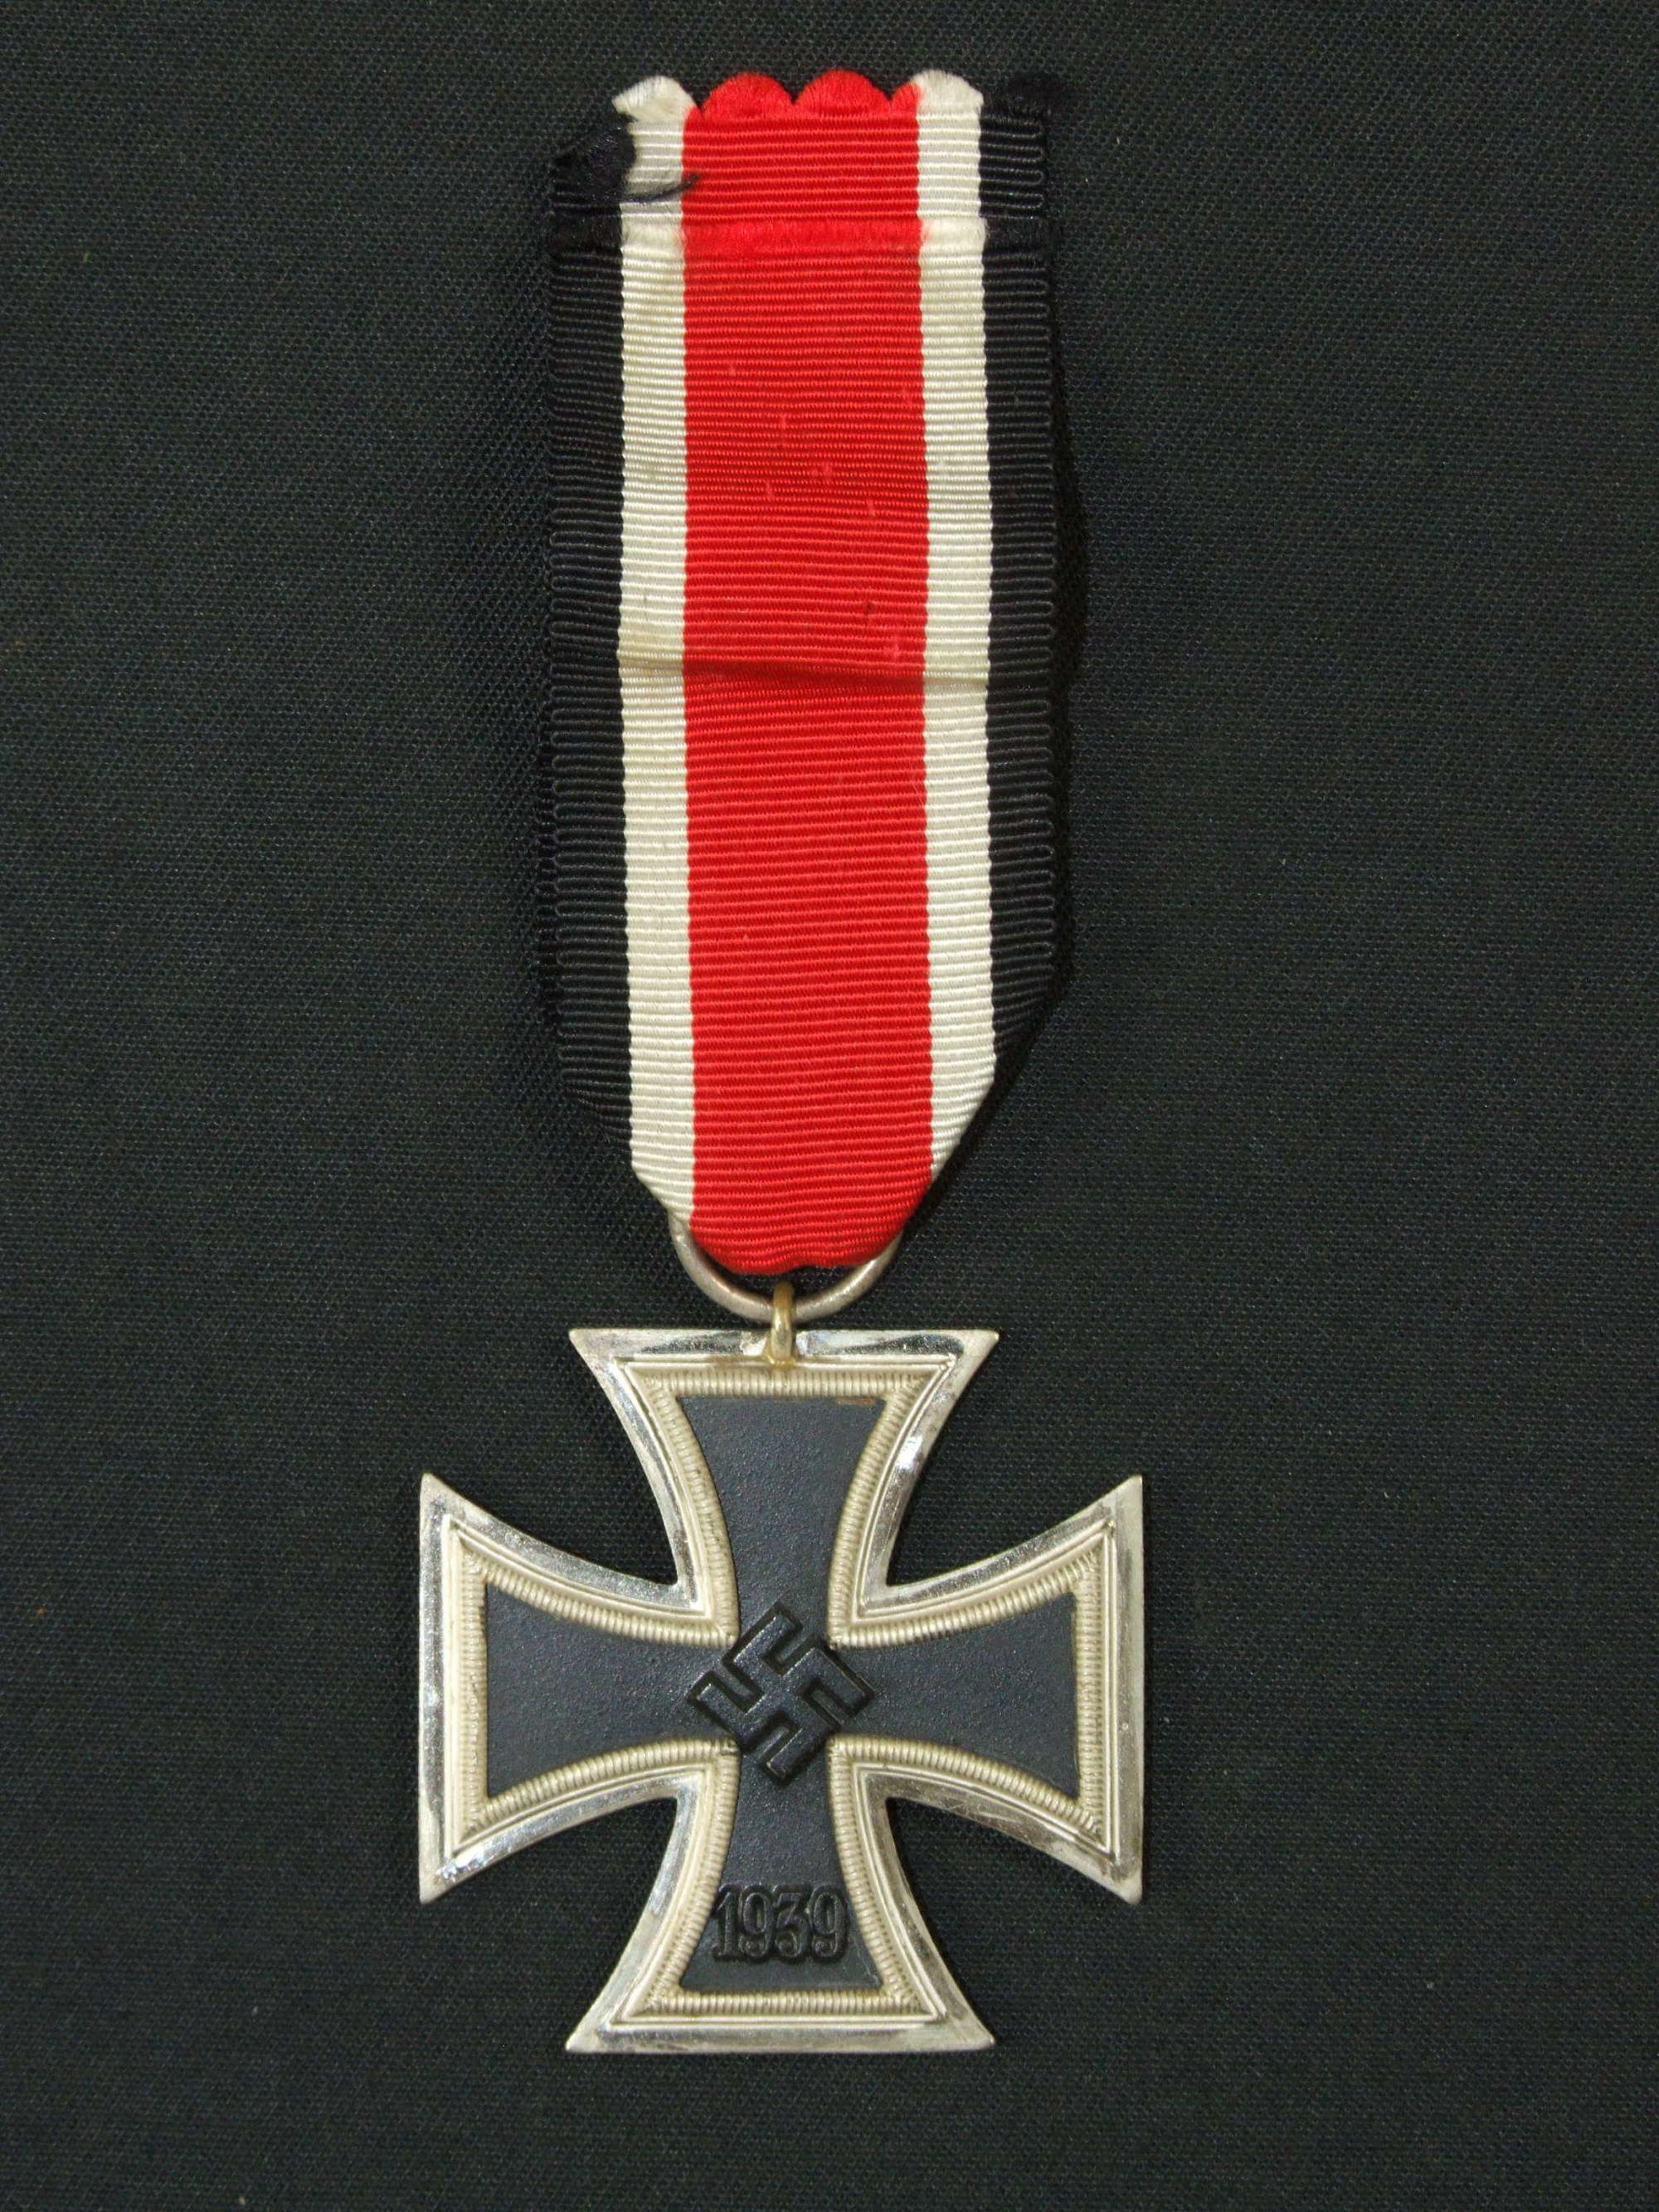 Iron Cross Second Class by Steinhauer & Lück.